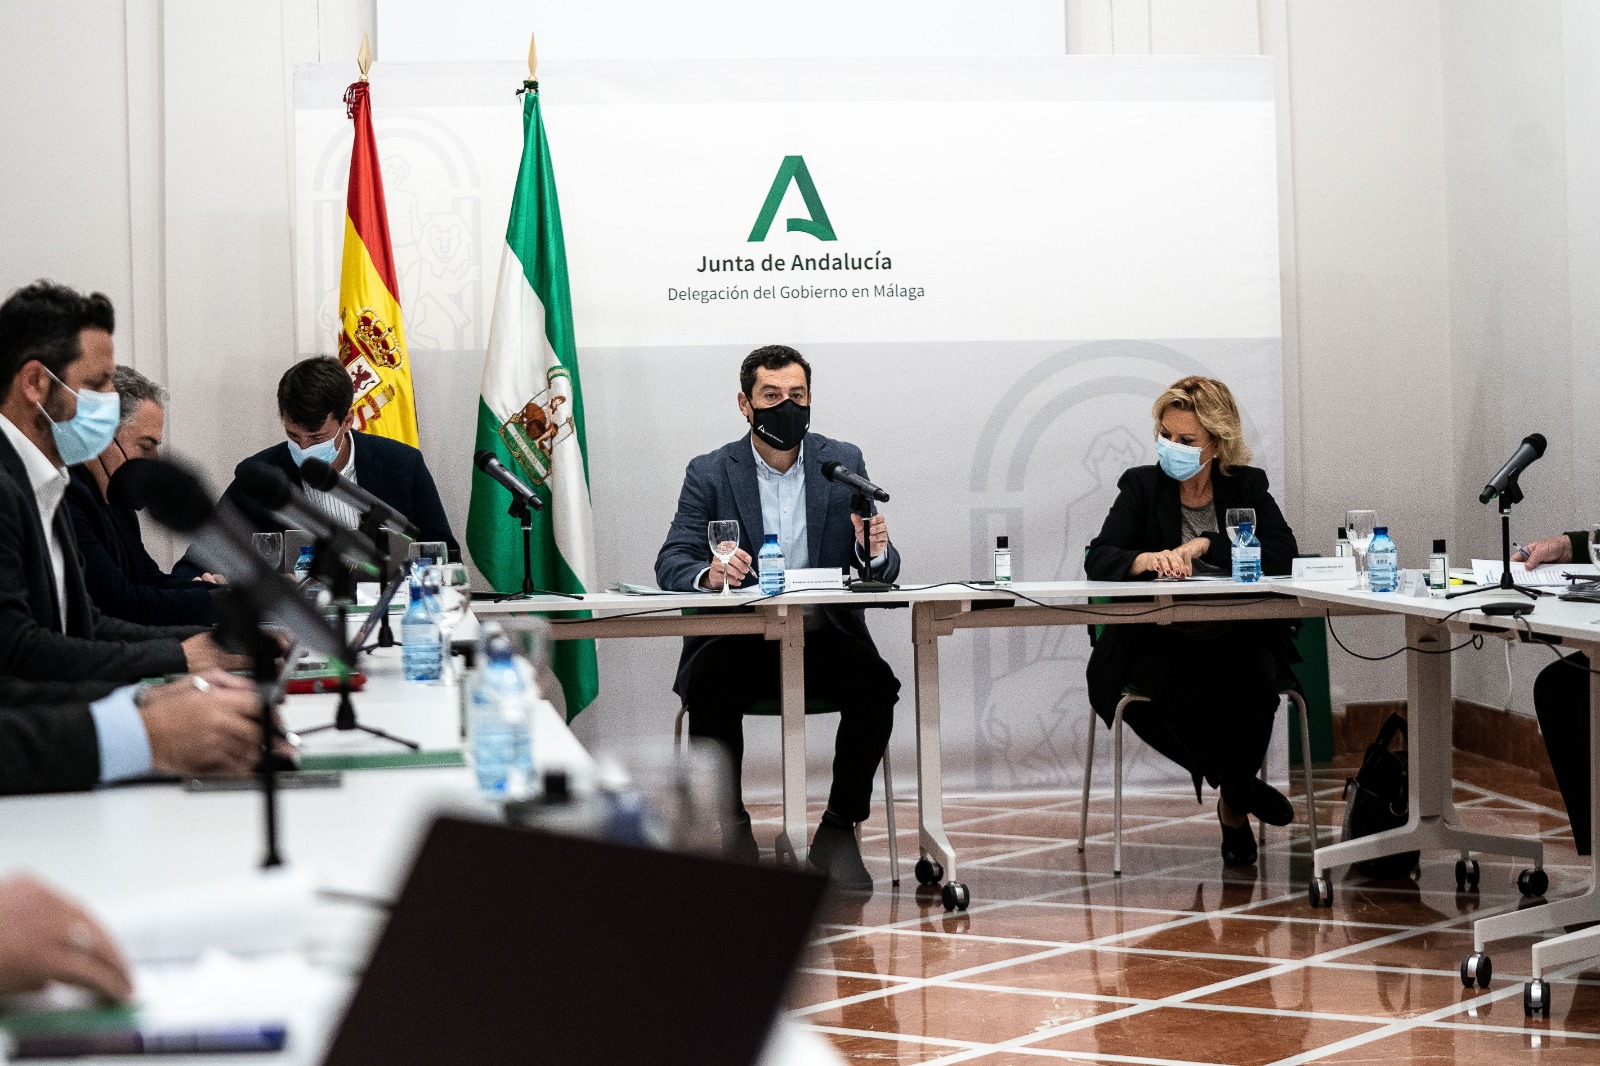 Andalucía suspende salidas de usuarios de residencias y exige mascarilla FPP2 para trabajadores y visitantes